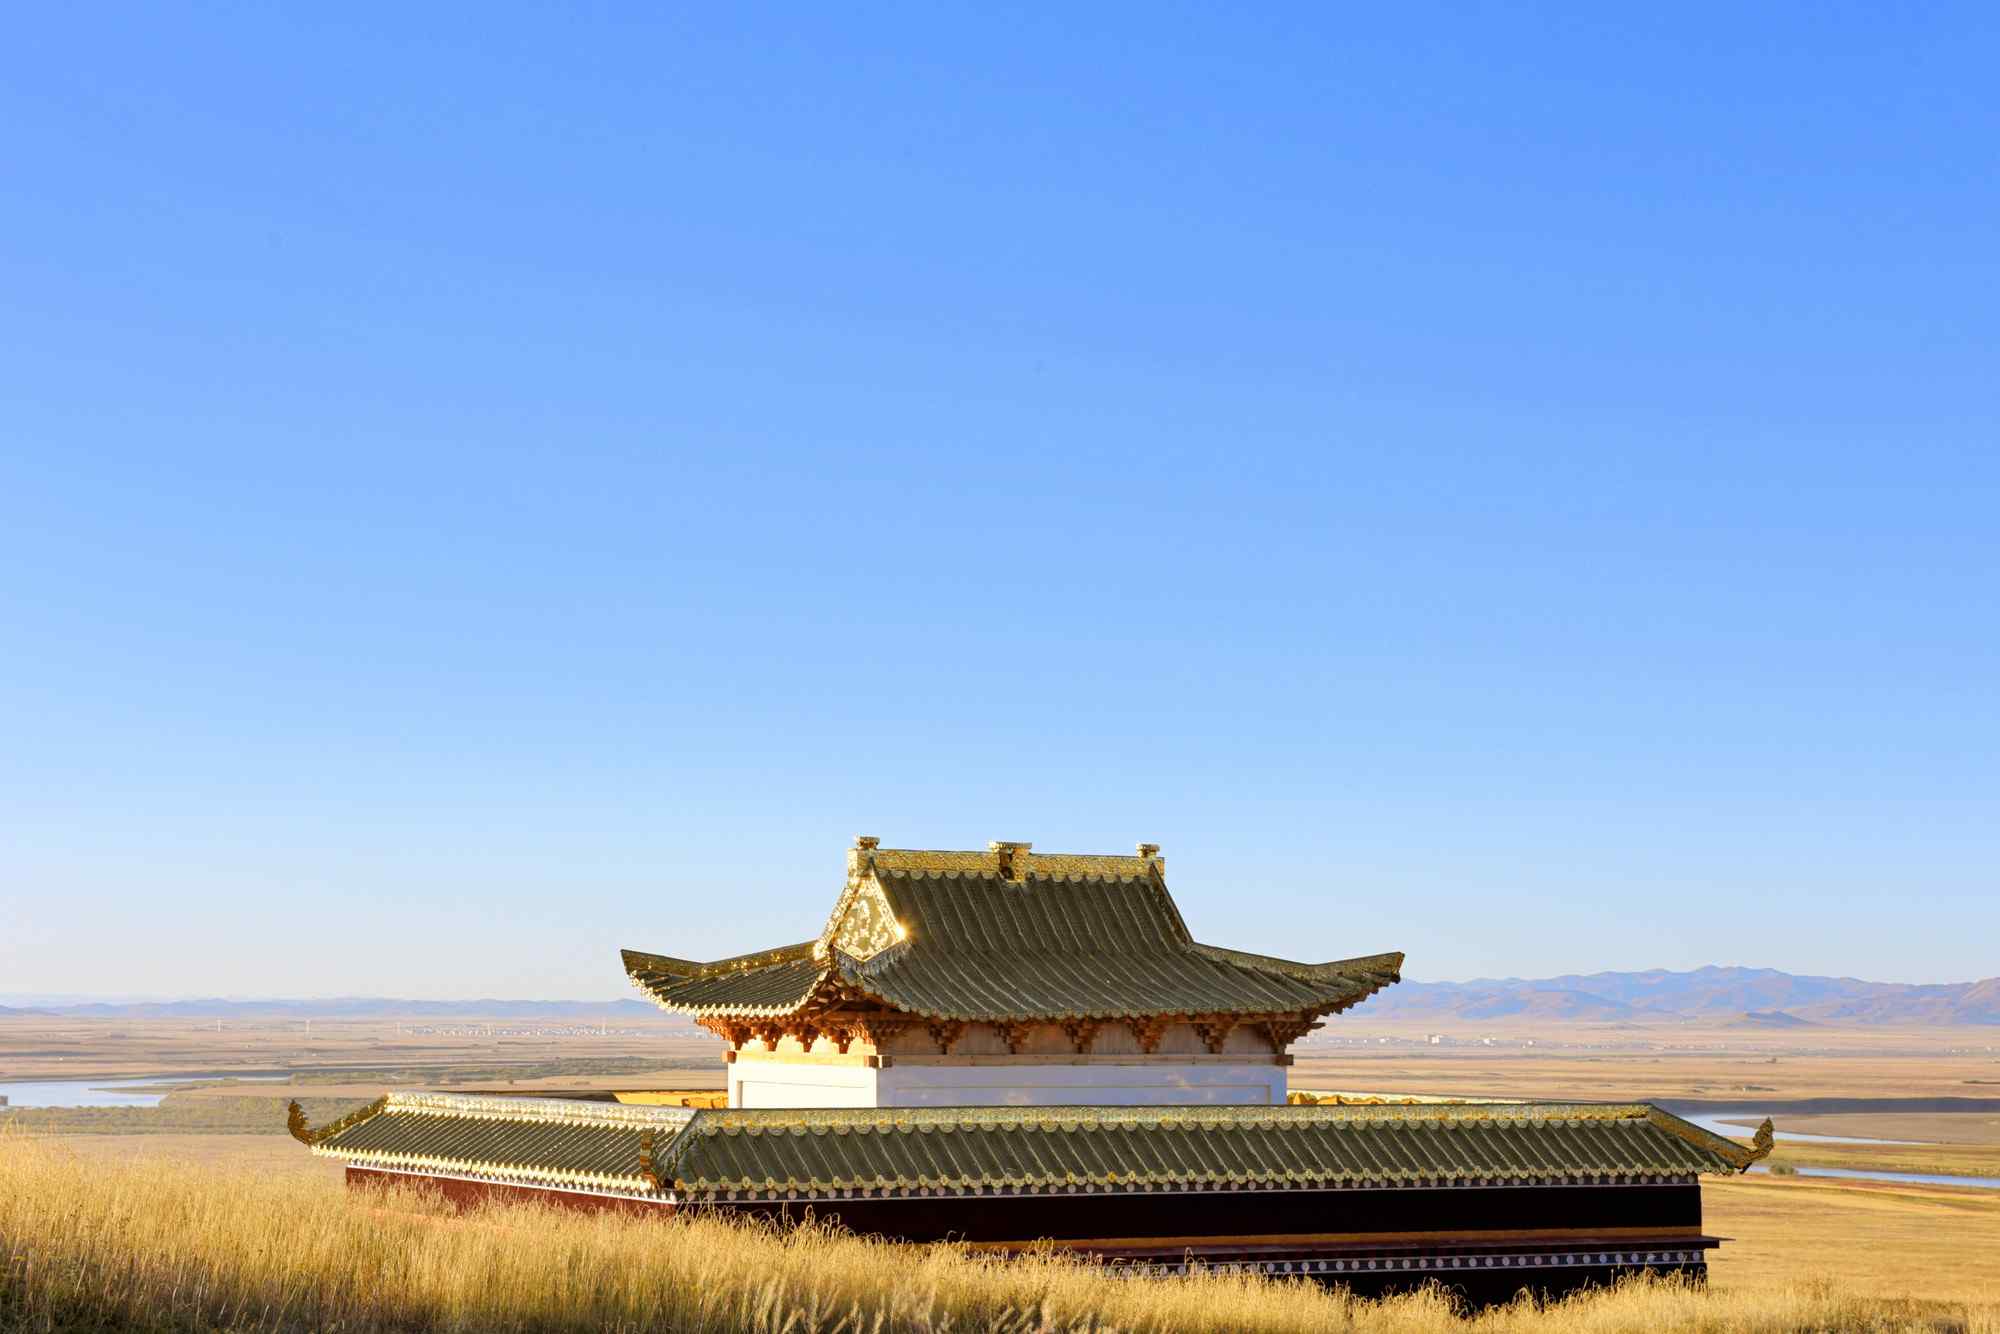 甘南藏区唯美风景经典建筑图片高清桌面壁纸